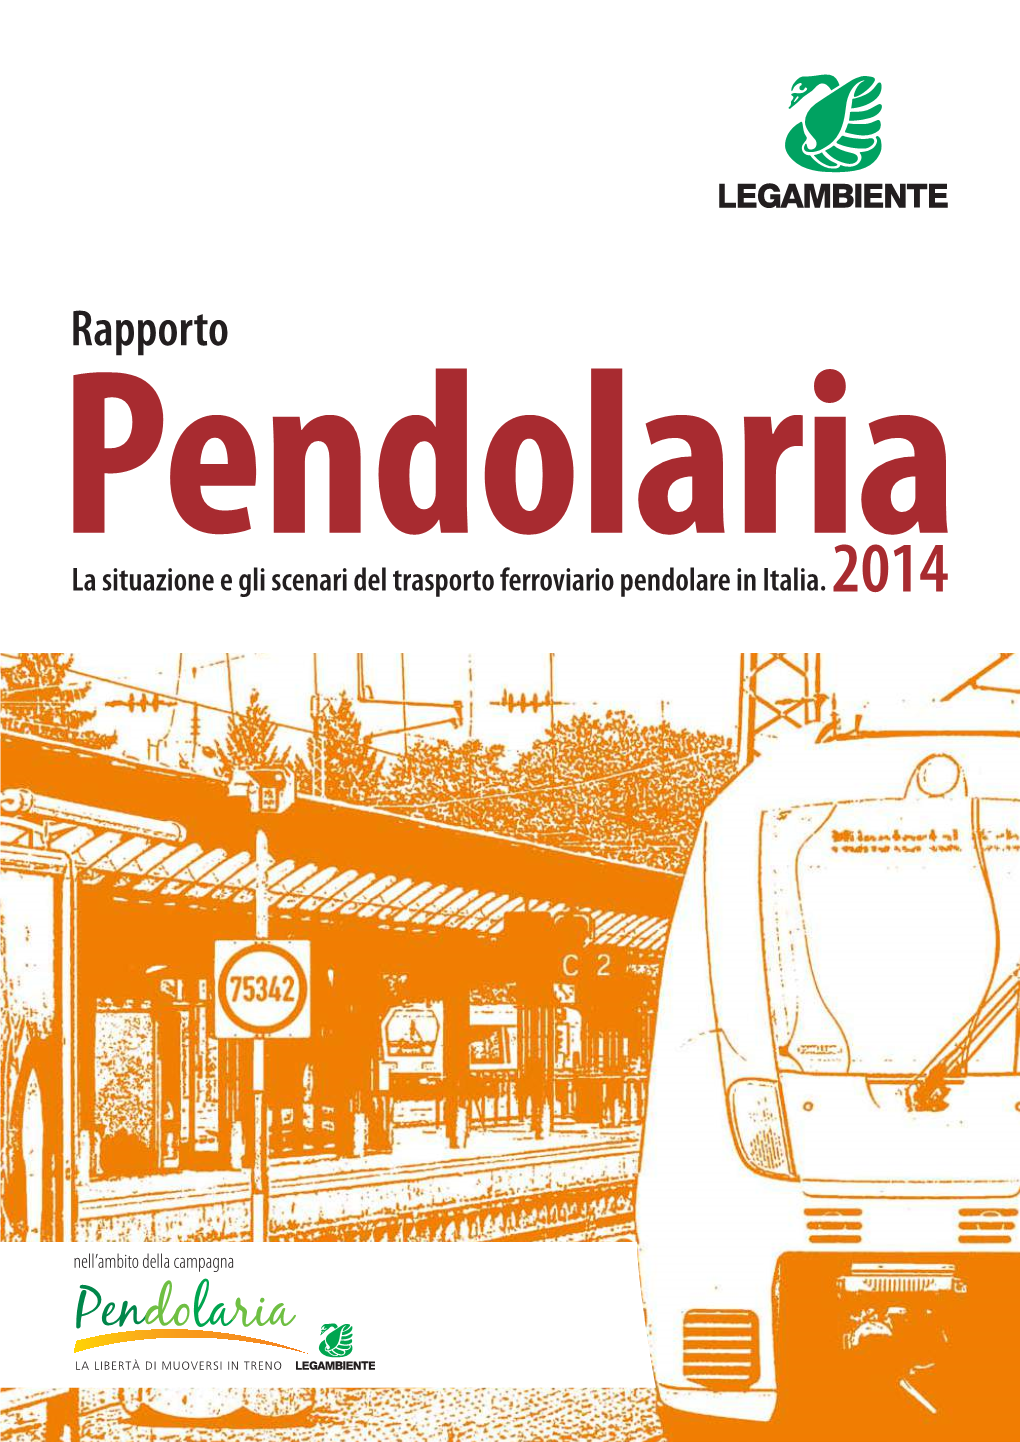 Legambiente, Rapporto Pendolaria 2014